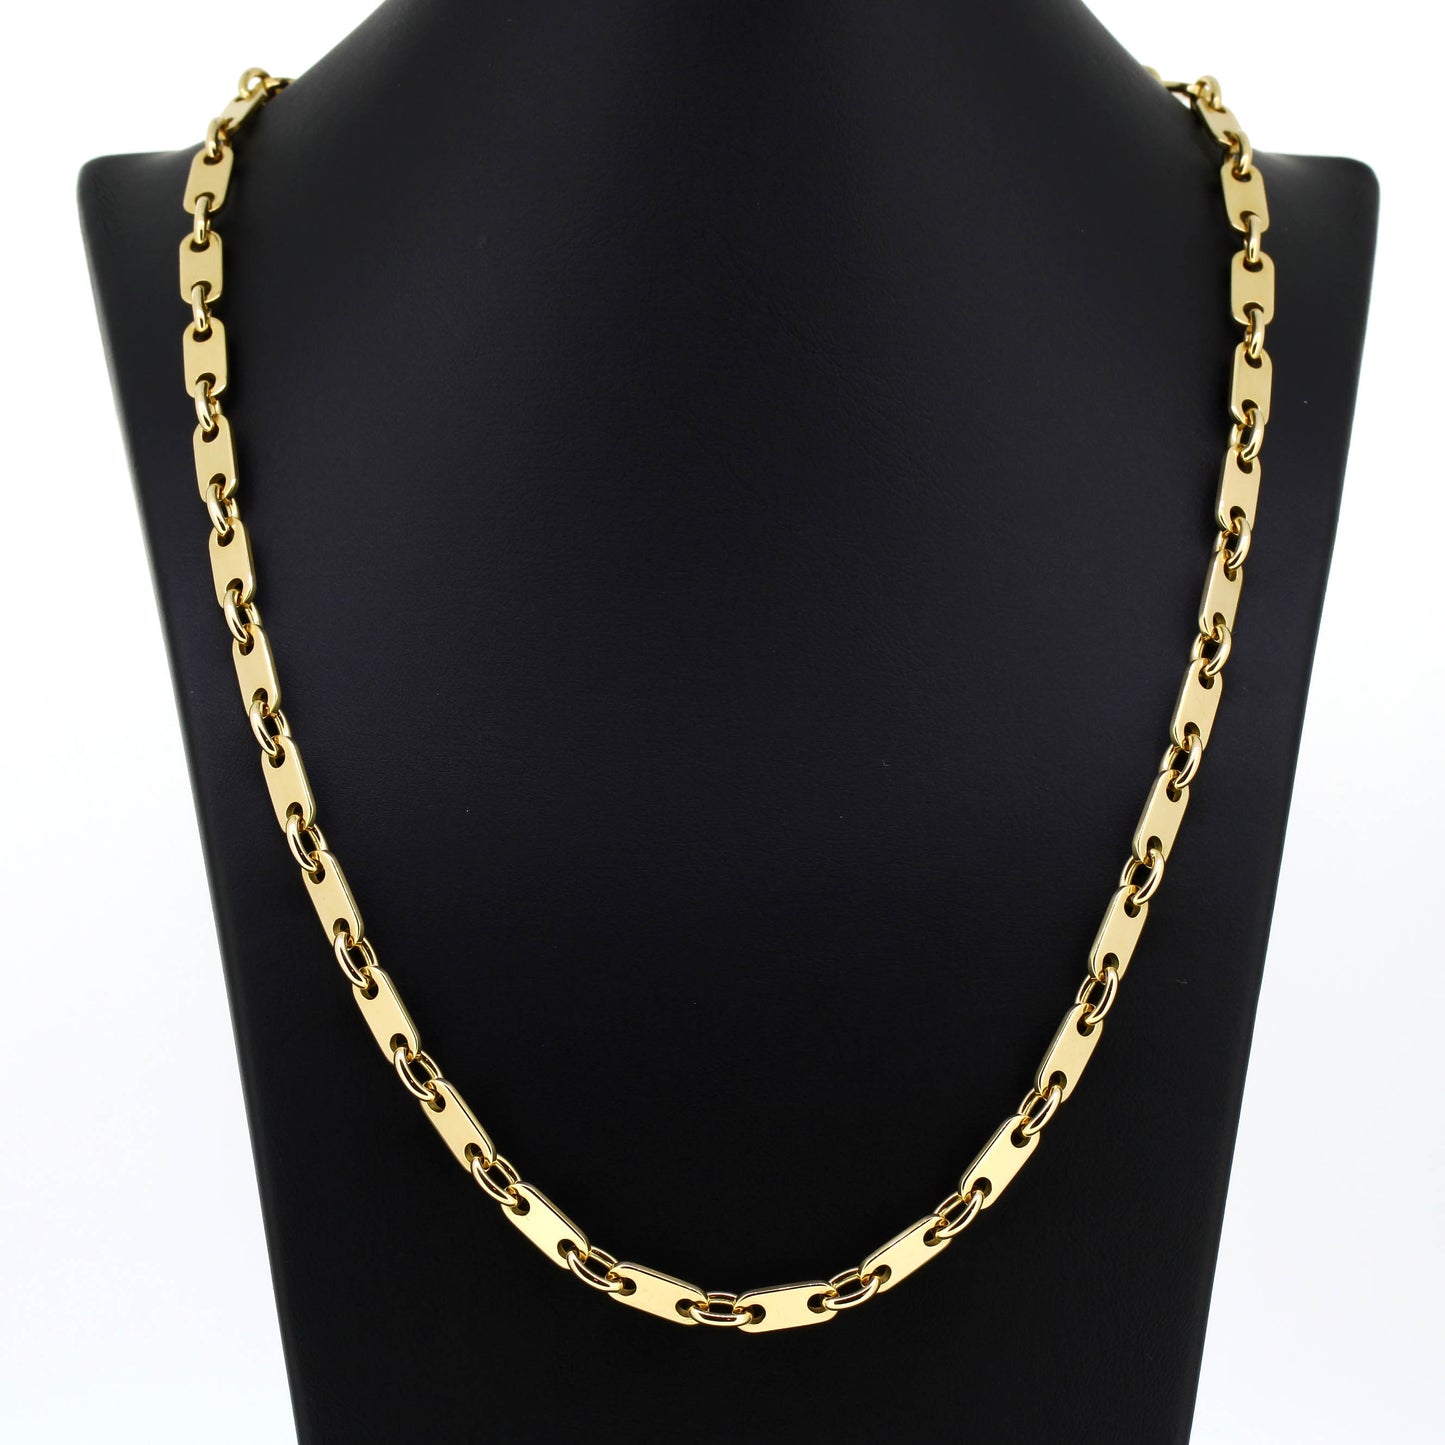 Platten Halskette 750 Gold 18 Kt Gelbgold - Kettenlänge 54 cm - Wert 6830,-